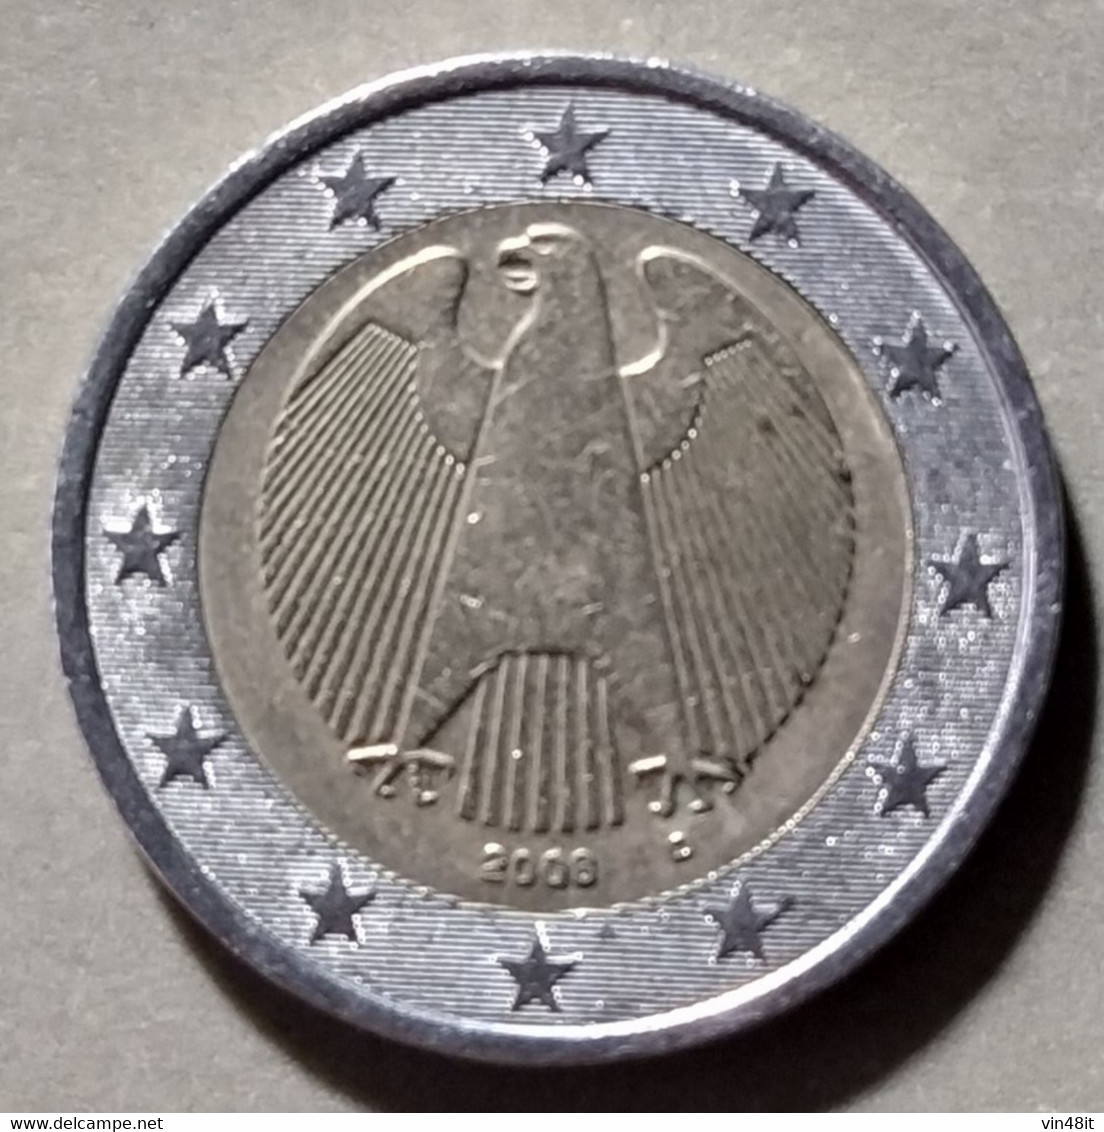 2008   - GERMANIA   - MONETA IN EURO  - DEL VALORE DI  2,00 EURO - USATA - Germany